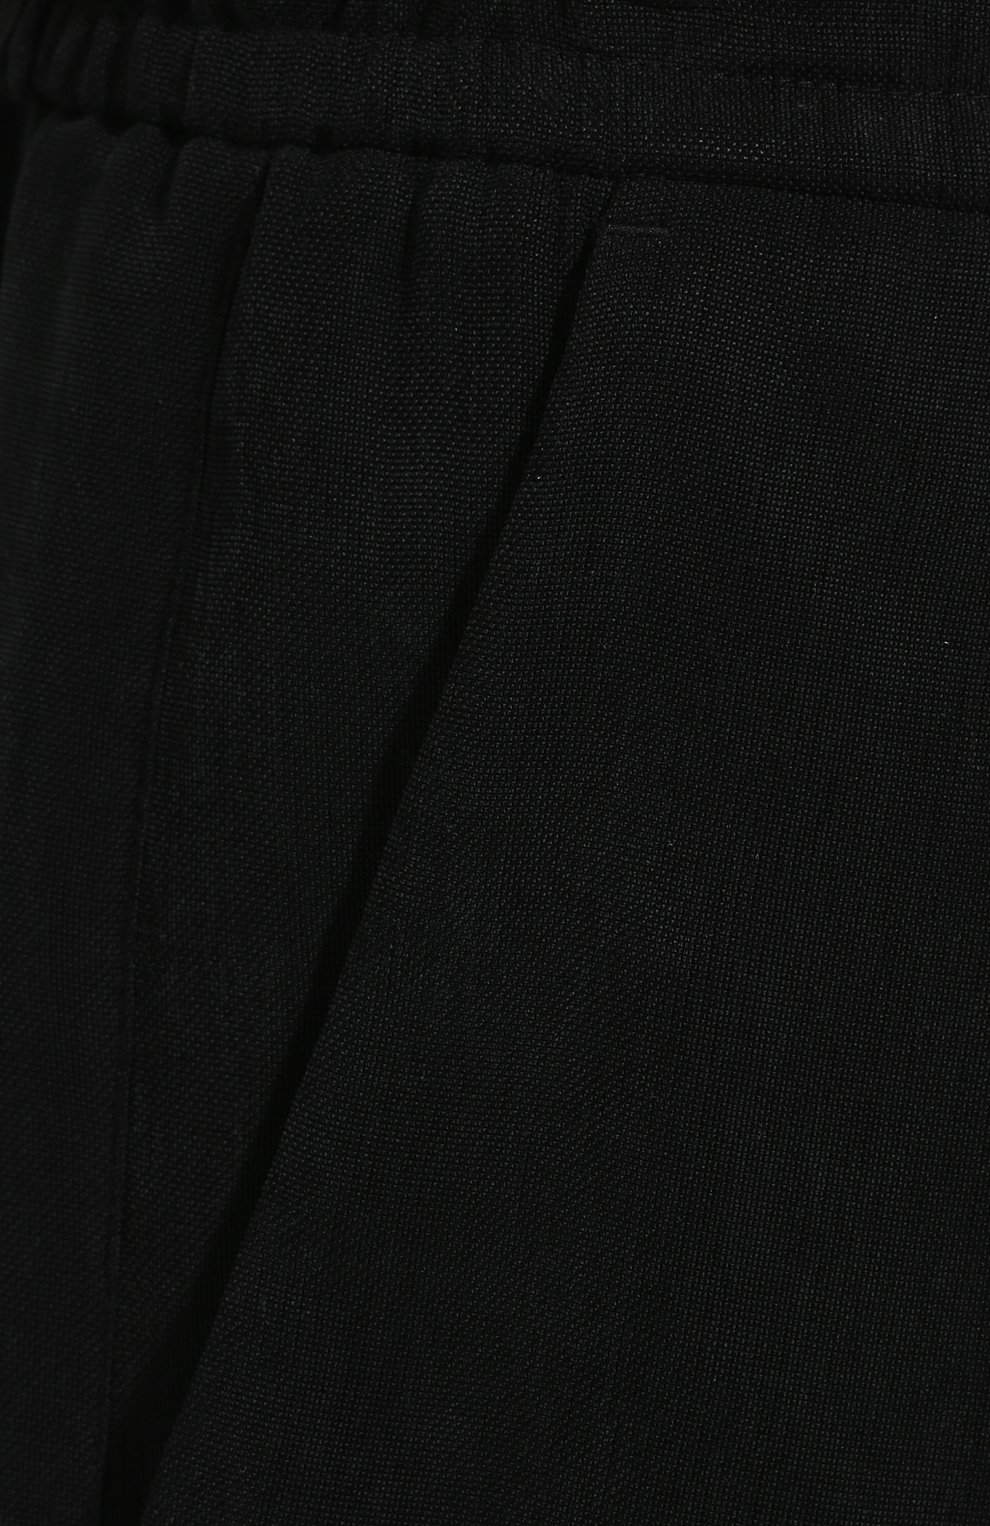 Мужские шорты GIORGIO ARMANI черного цвета, арт. 9SGPB003/T00AB | Фото 5 (Материал внешний: Купро, Растительное волокно; Мужское Кросс-КТ: Шорты-одежда; Принт: Без принта; Случай: Повседневный; Длина Шорты М: Ниже колена; Стили: Кэжуэл)